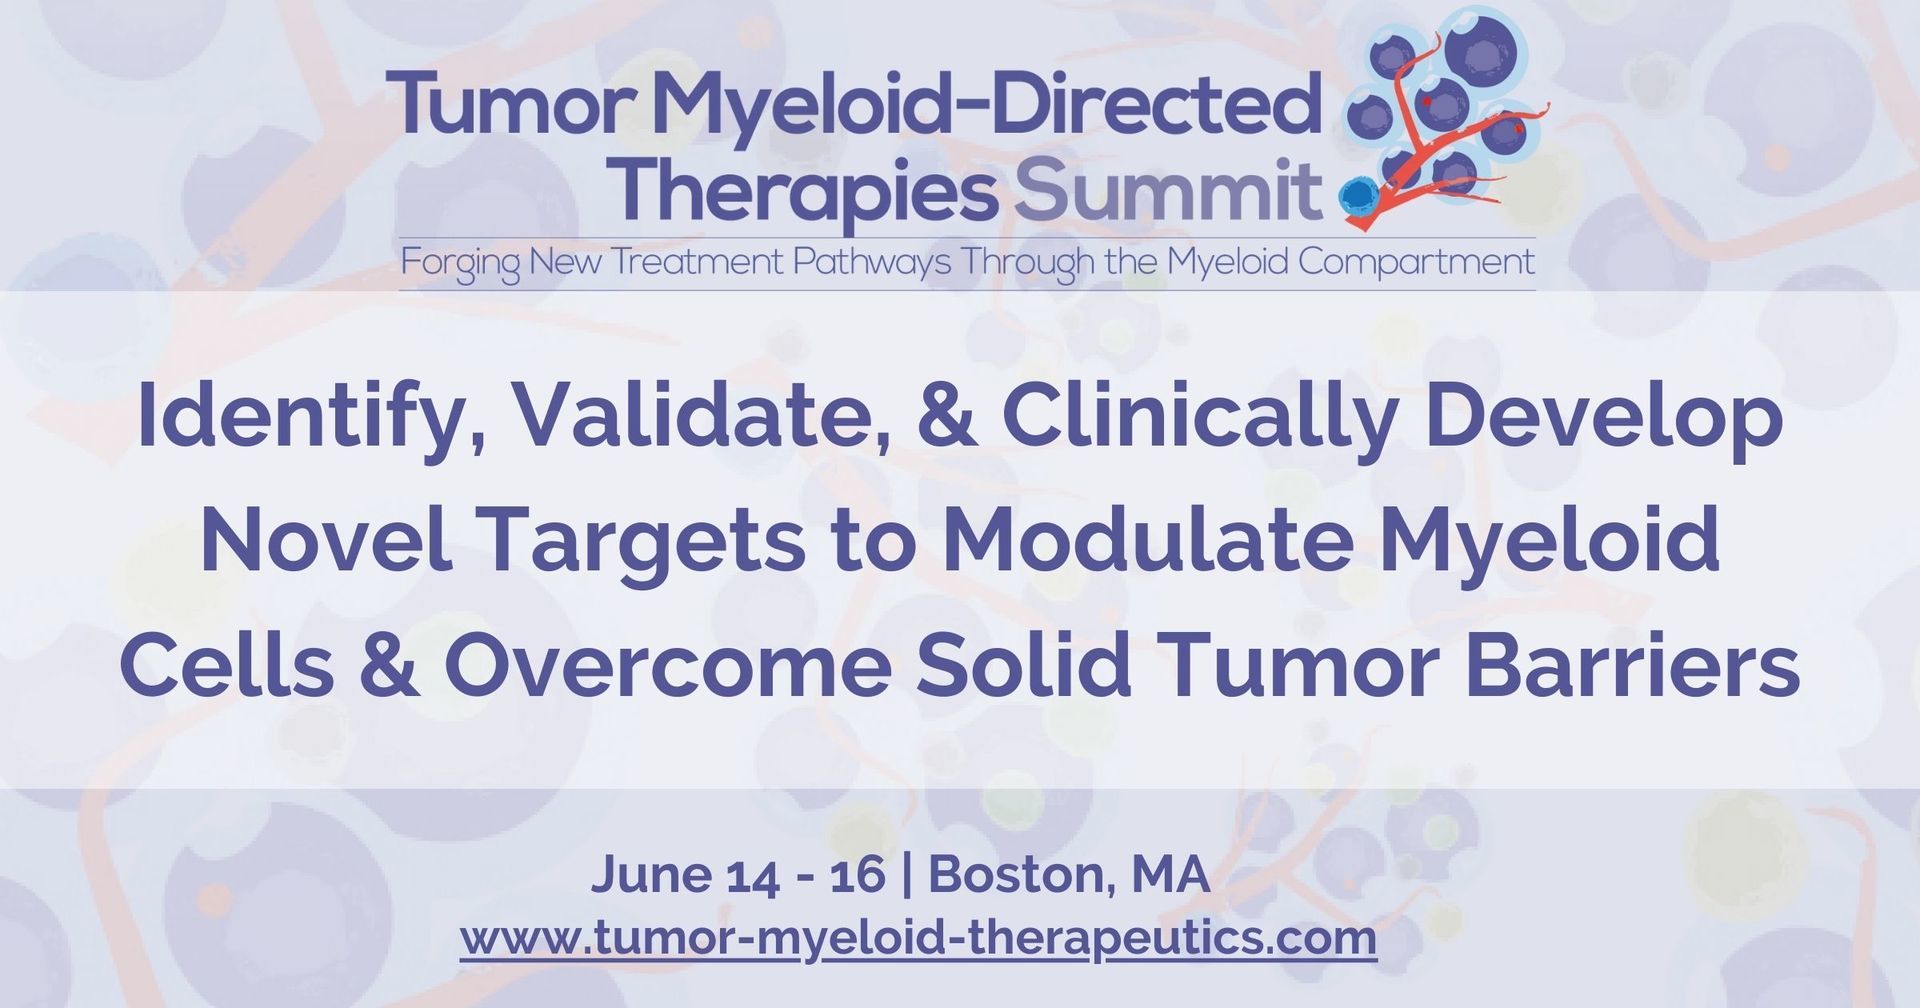 2nd Tumor Myeloid-Directed Therapies Summit, Boston, Massachusetts, United States